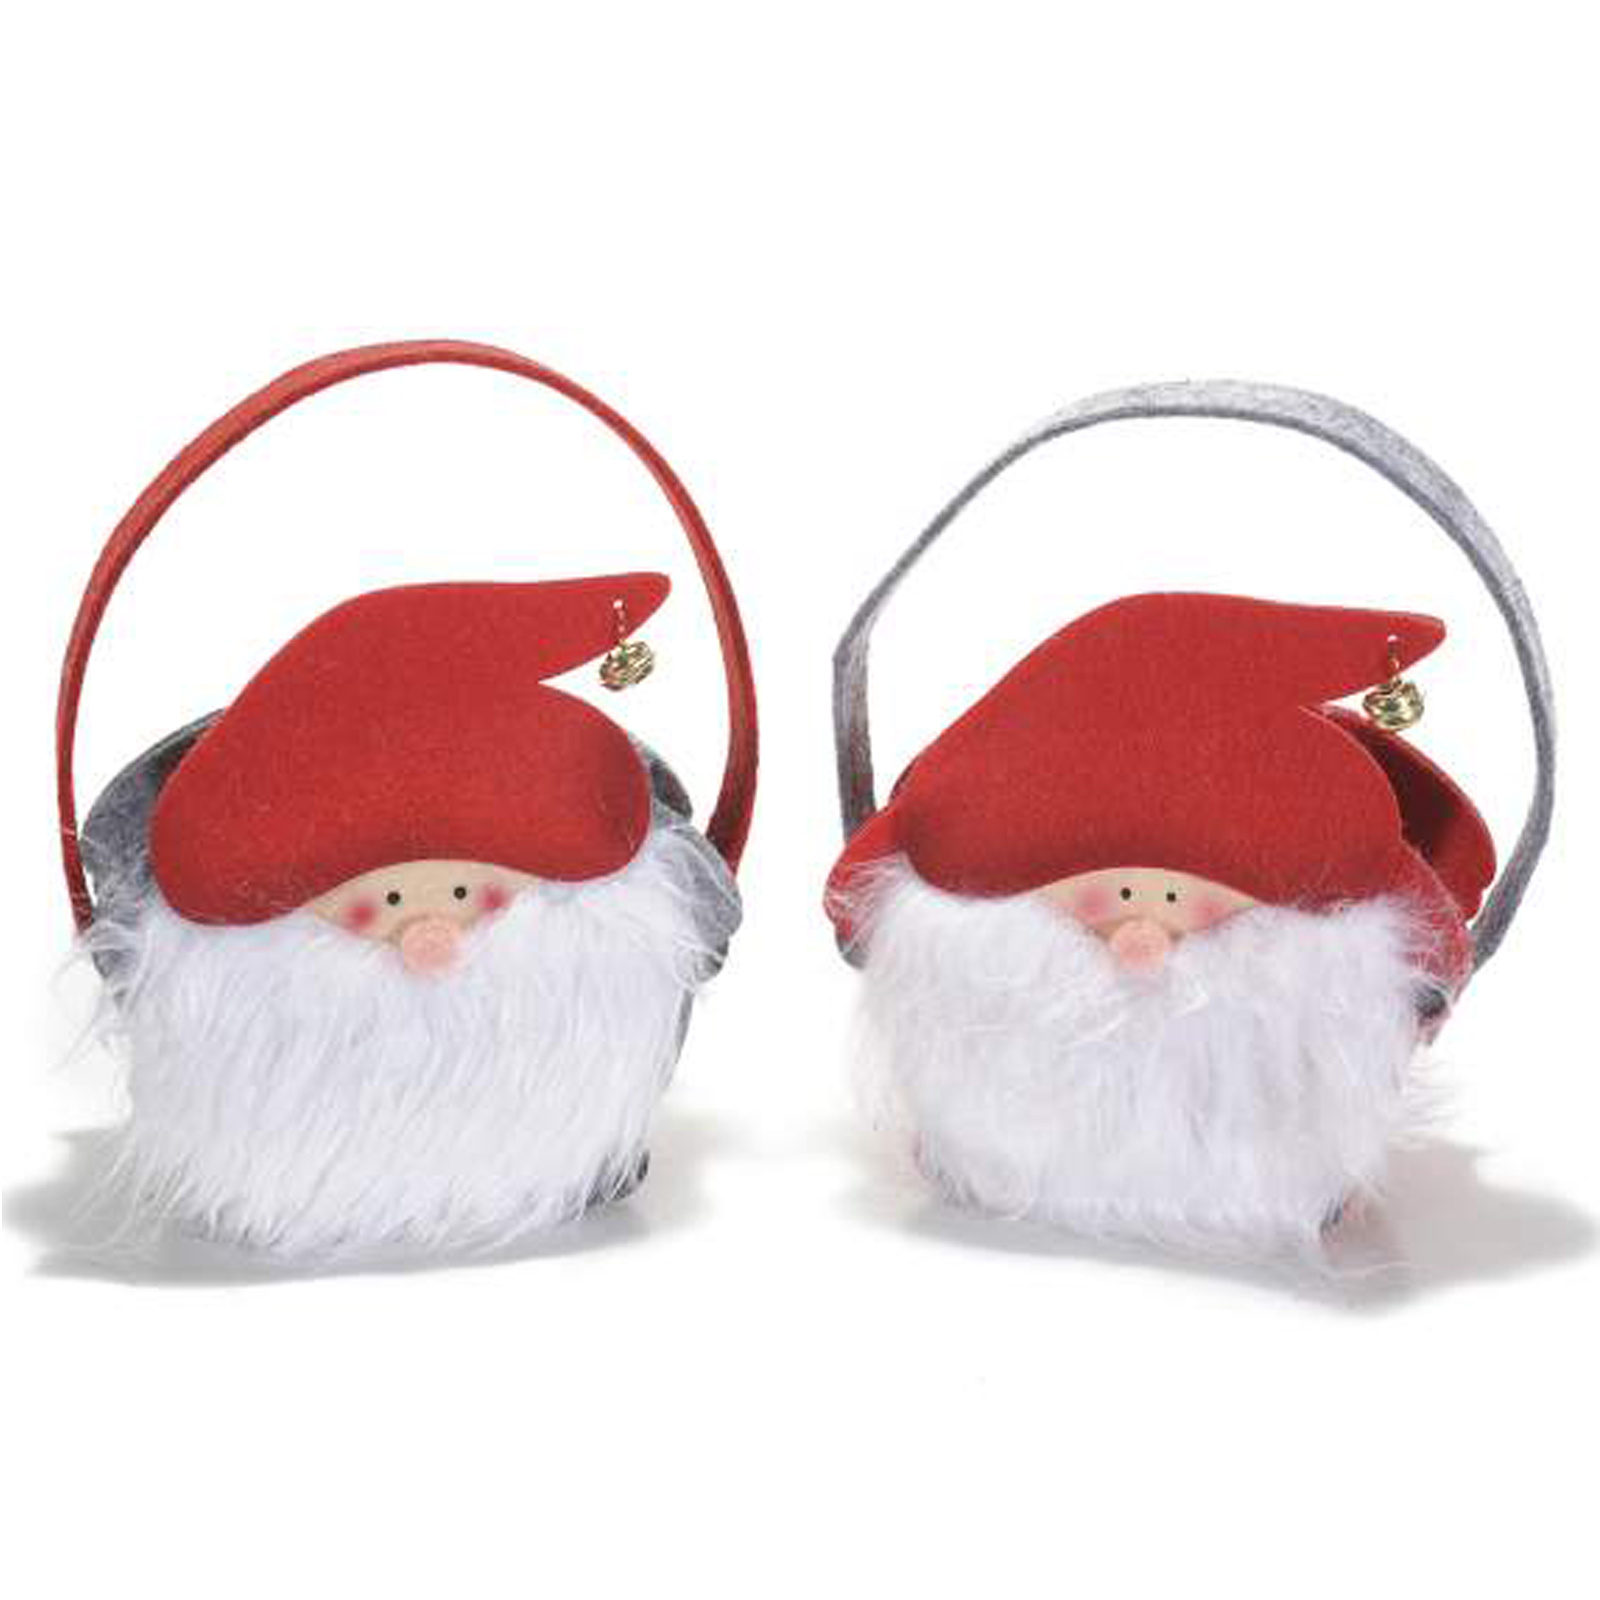 4Pz. Babbo Natale borsette in panno con barba e campanella: cm 15x8,2x15 H (c/manico20)